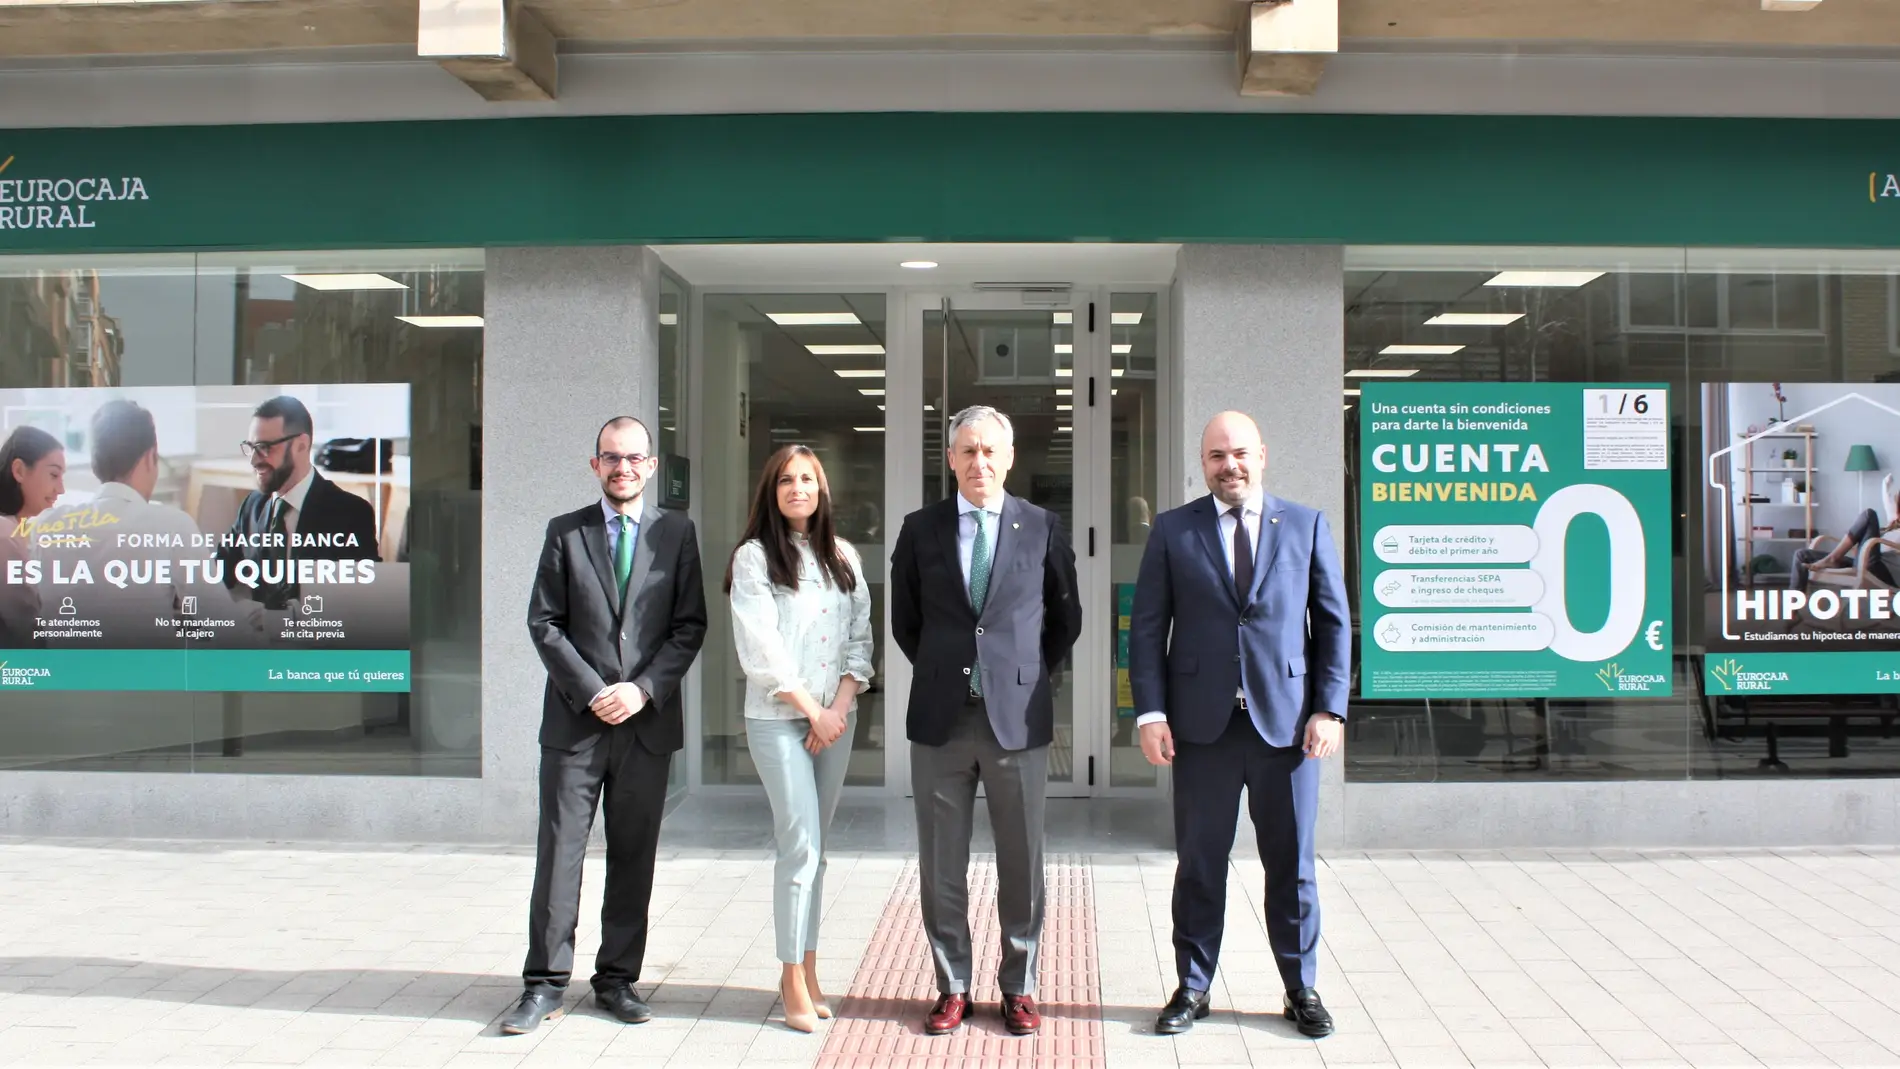 Acelerar Cambiarse de ropa los Eurocaja Rural abre una nueva oficina en Albacete | Onda Cero Radio